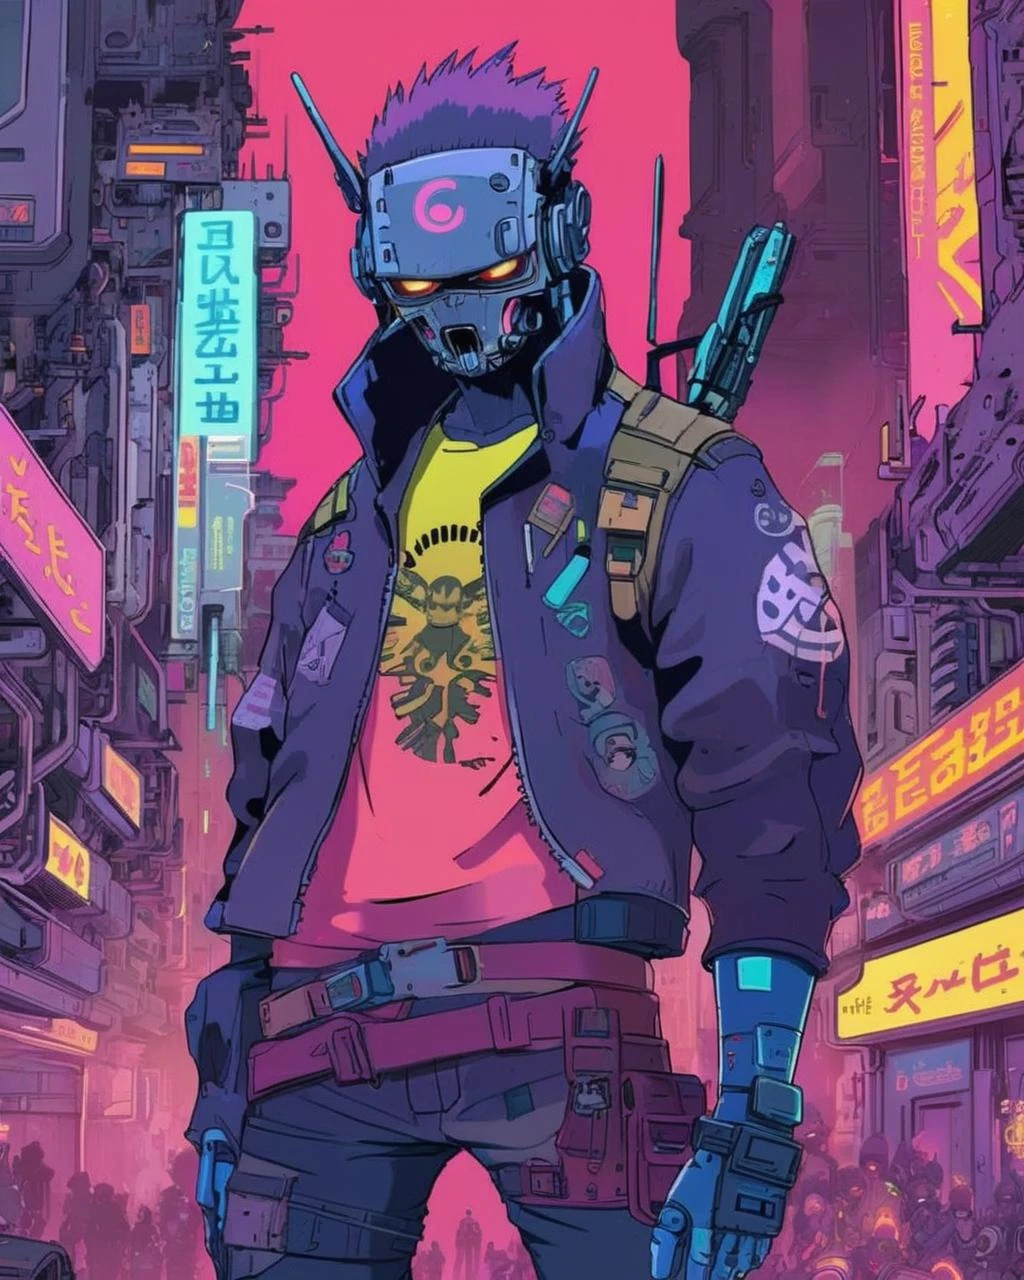 anime, um estande final, rebeldes e heróis cibernéticos se unindo contra um ataque de monstruosidades digitais, o choque de mundos irrompendo em uma explosão de néon e fúria.,  ciberpunk, ciberpunk art, retrofuturismo